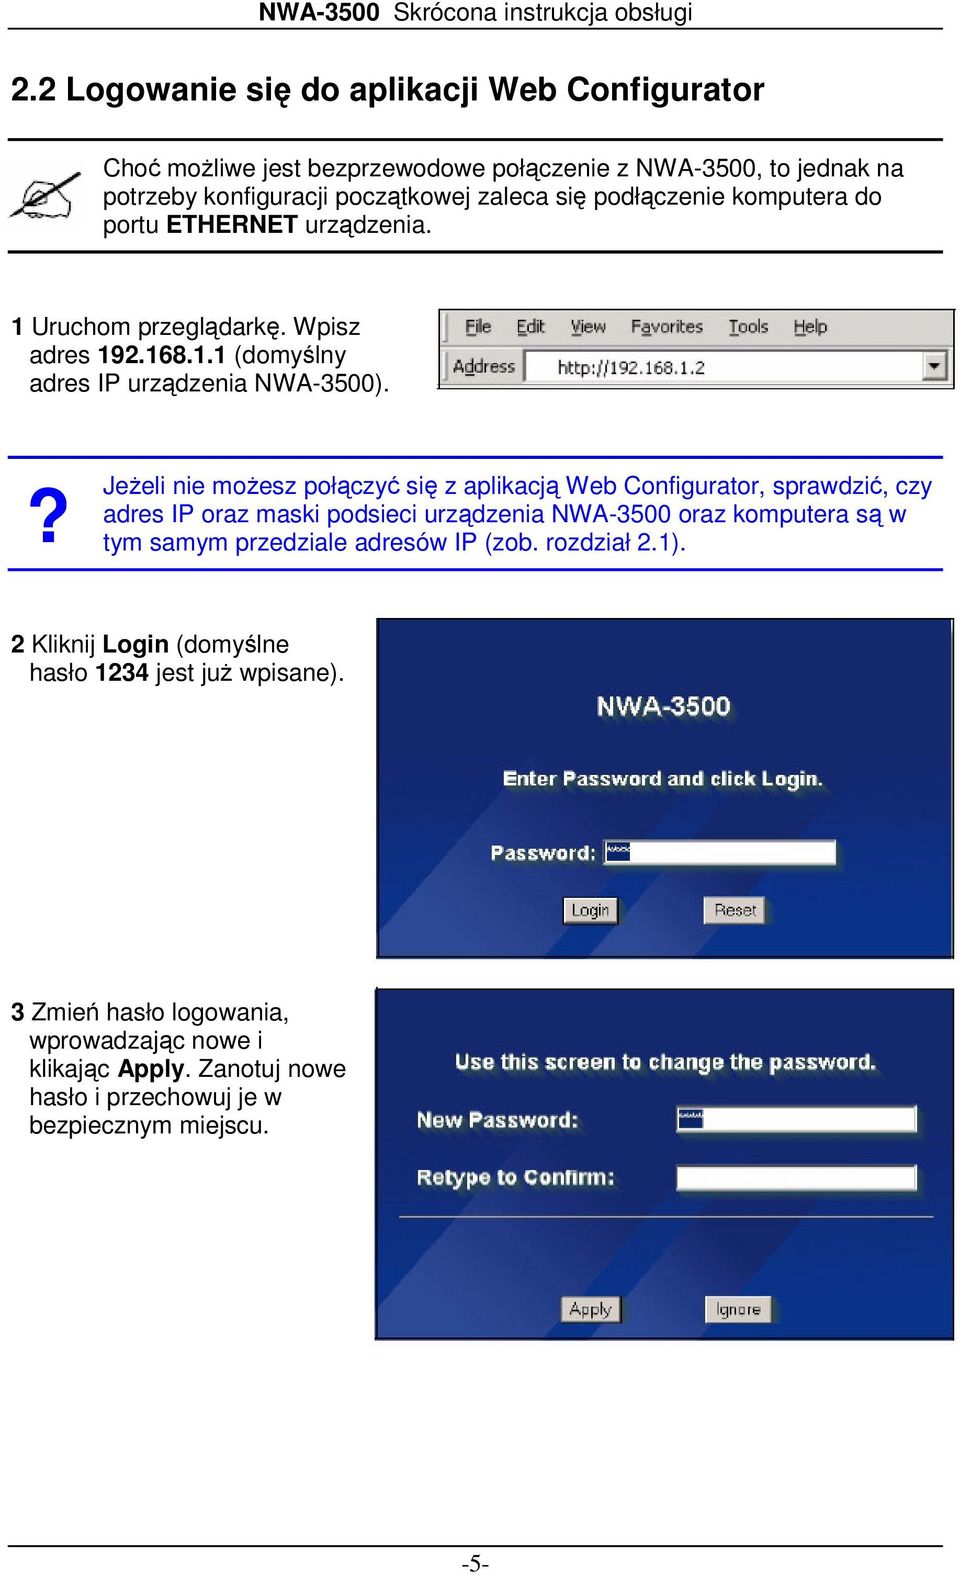 ? Jeżeli nie możesz połączyć się z aplikacją Web Configurator, sprawdzić, czy adres IP oraz maski podsieci urządzenia NWA-3500 oraz komputera są w tym samym przedziale